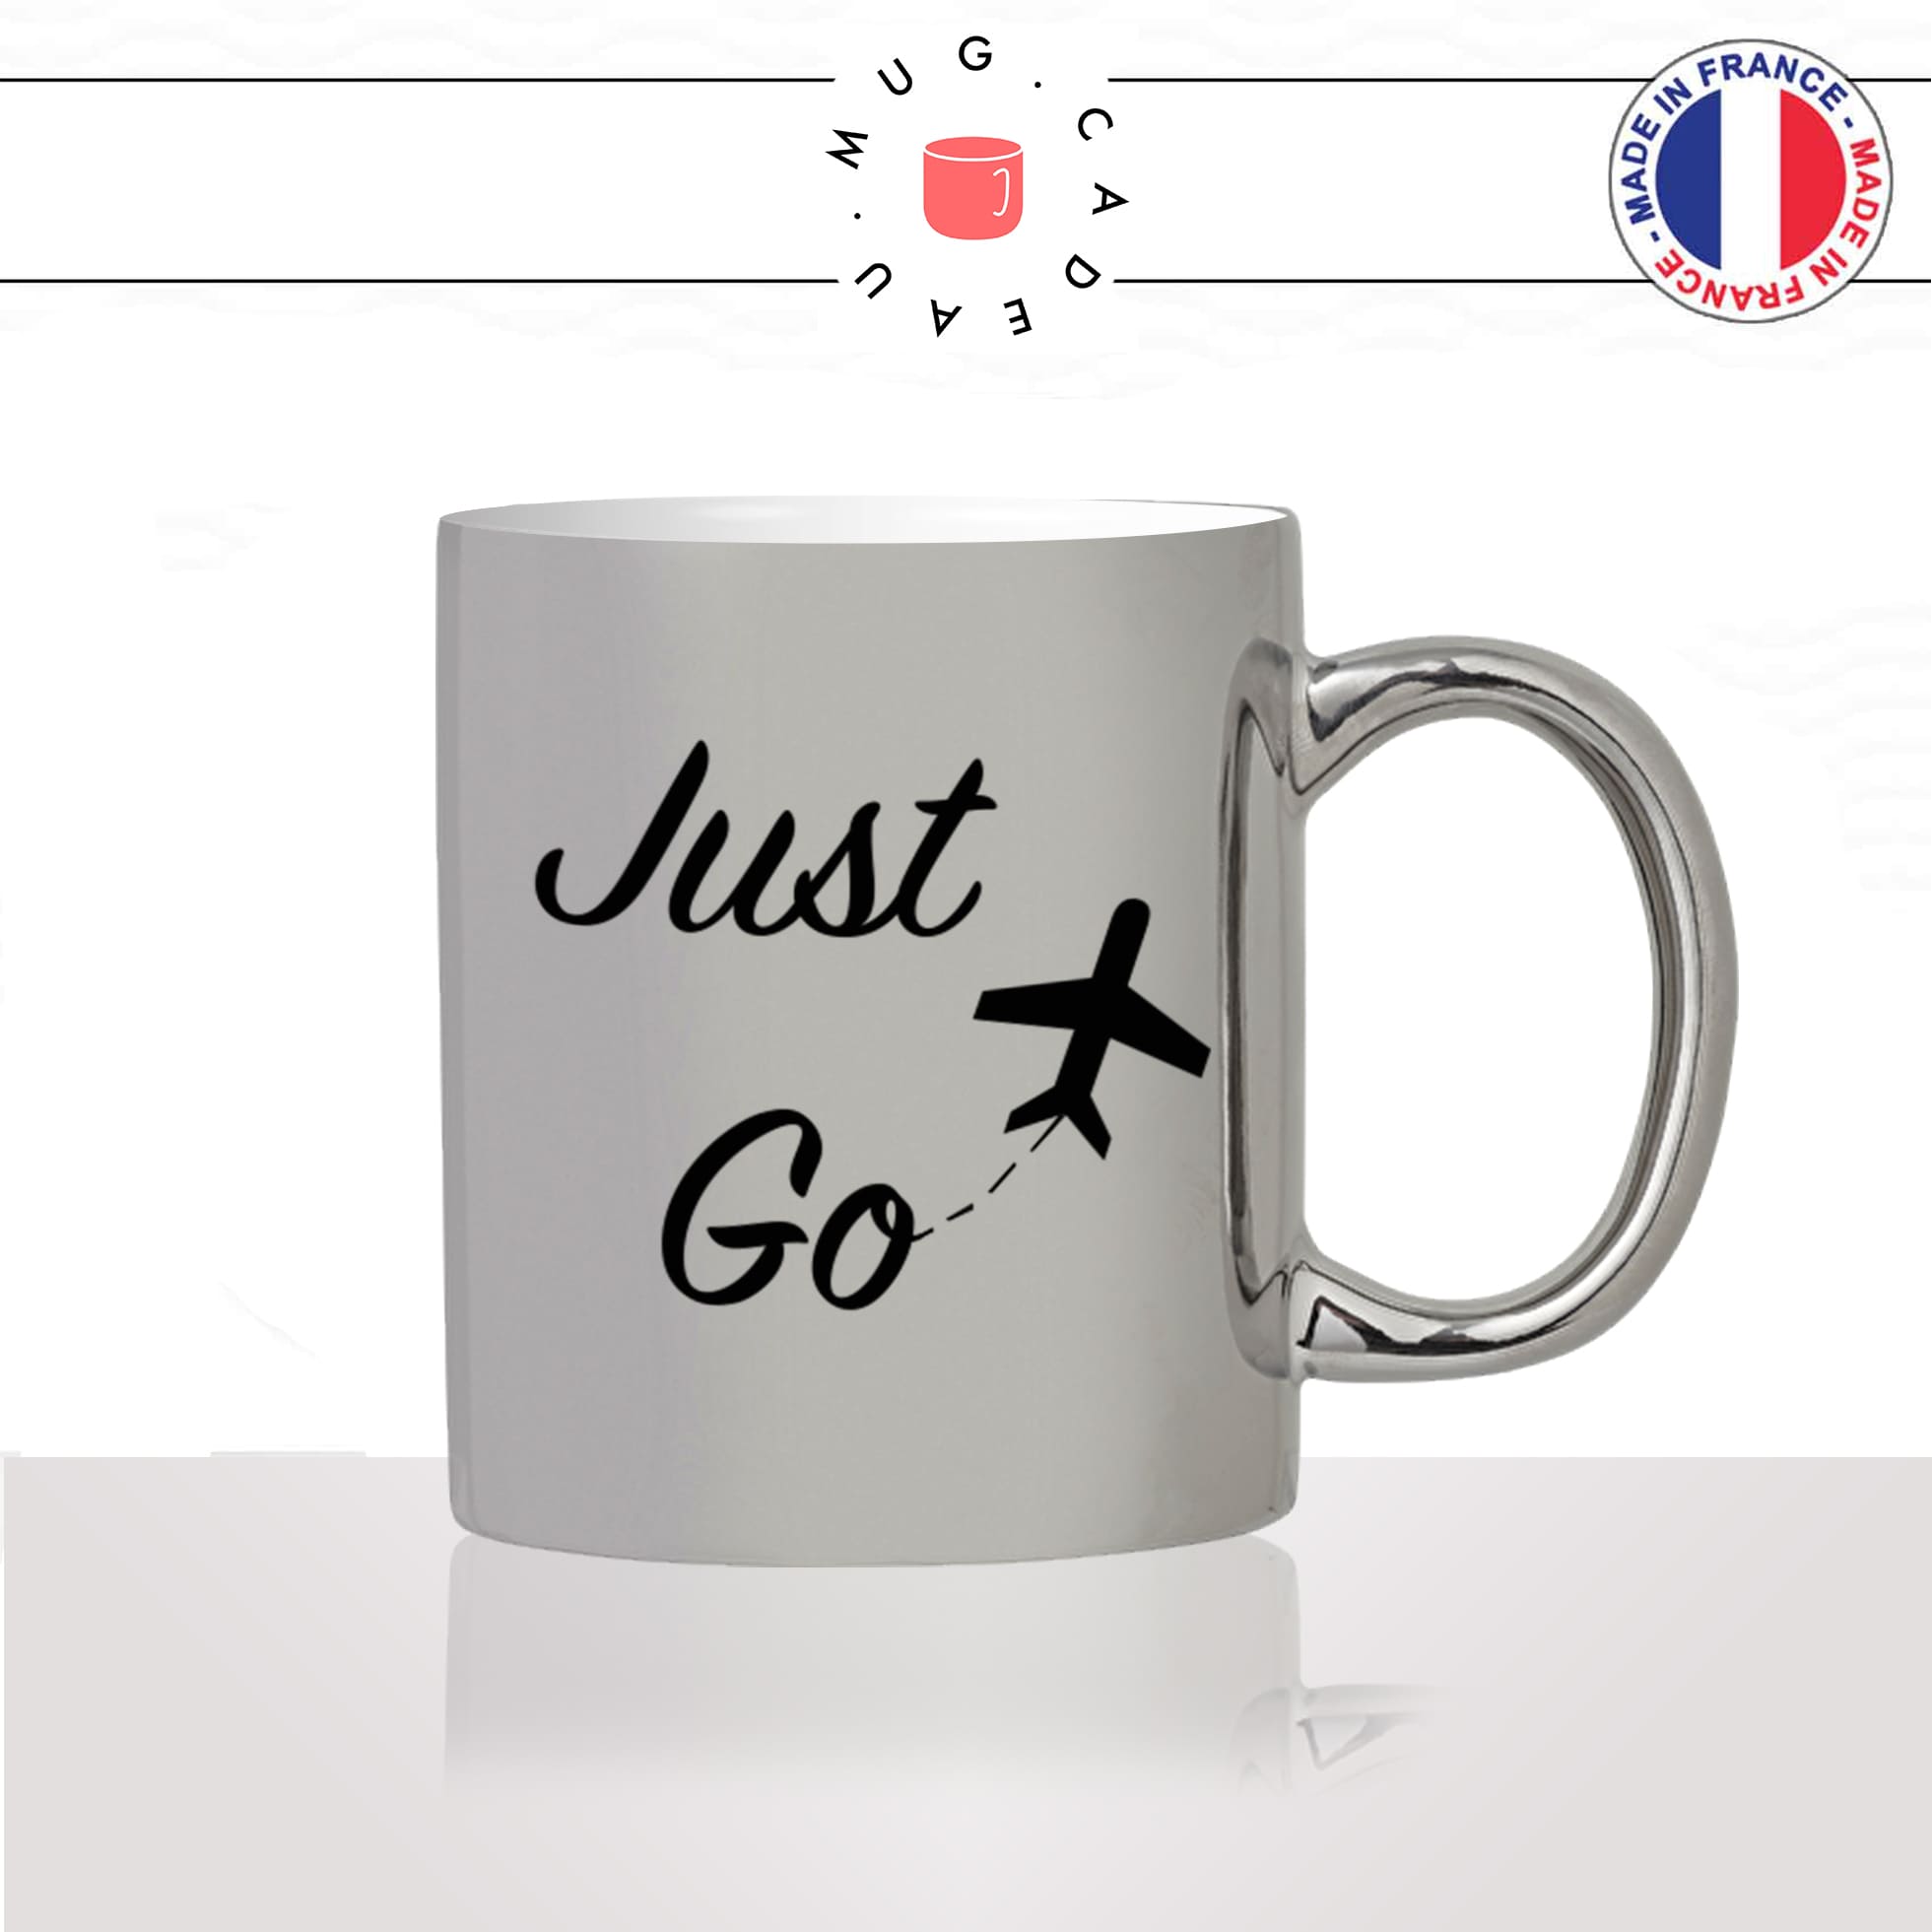 mug-tasse-argent-argenté-silver-just-go-voyageur-anglais-voyage-travel-free-avion-vacance-influenceur-humour-idée-cadeau-fun-cool-café-thé2